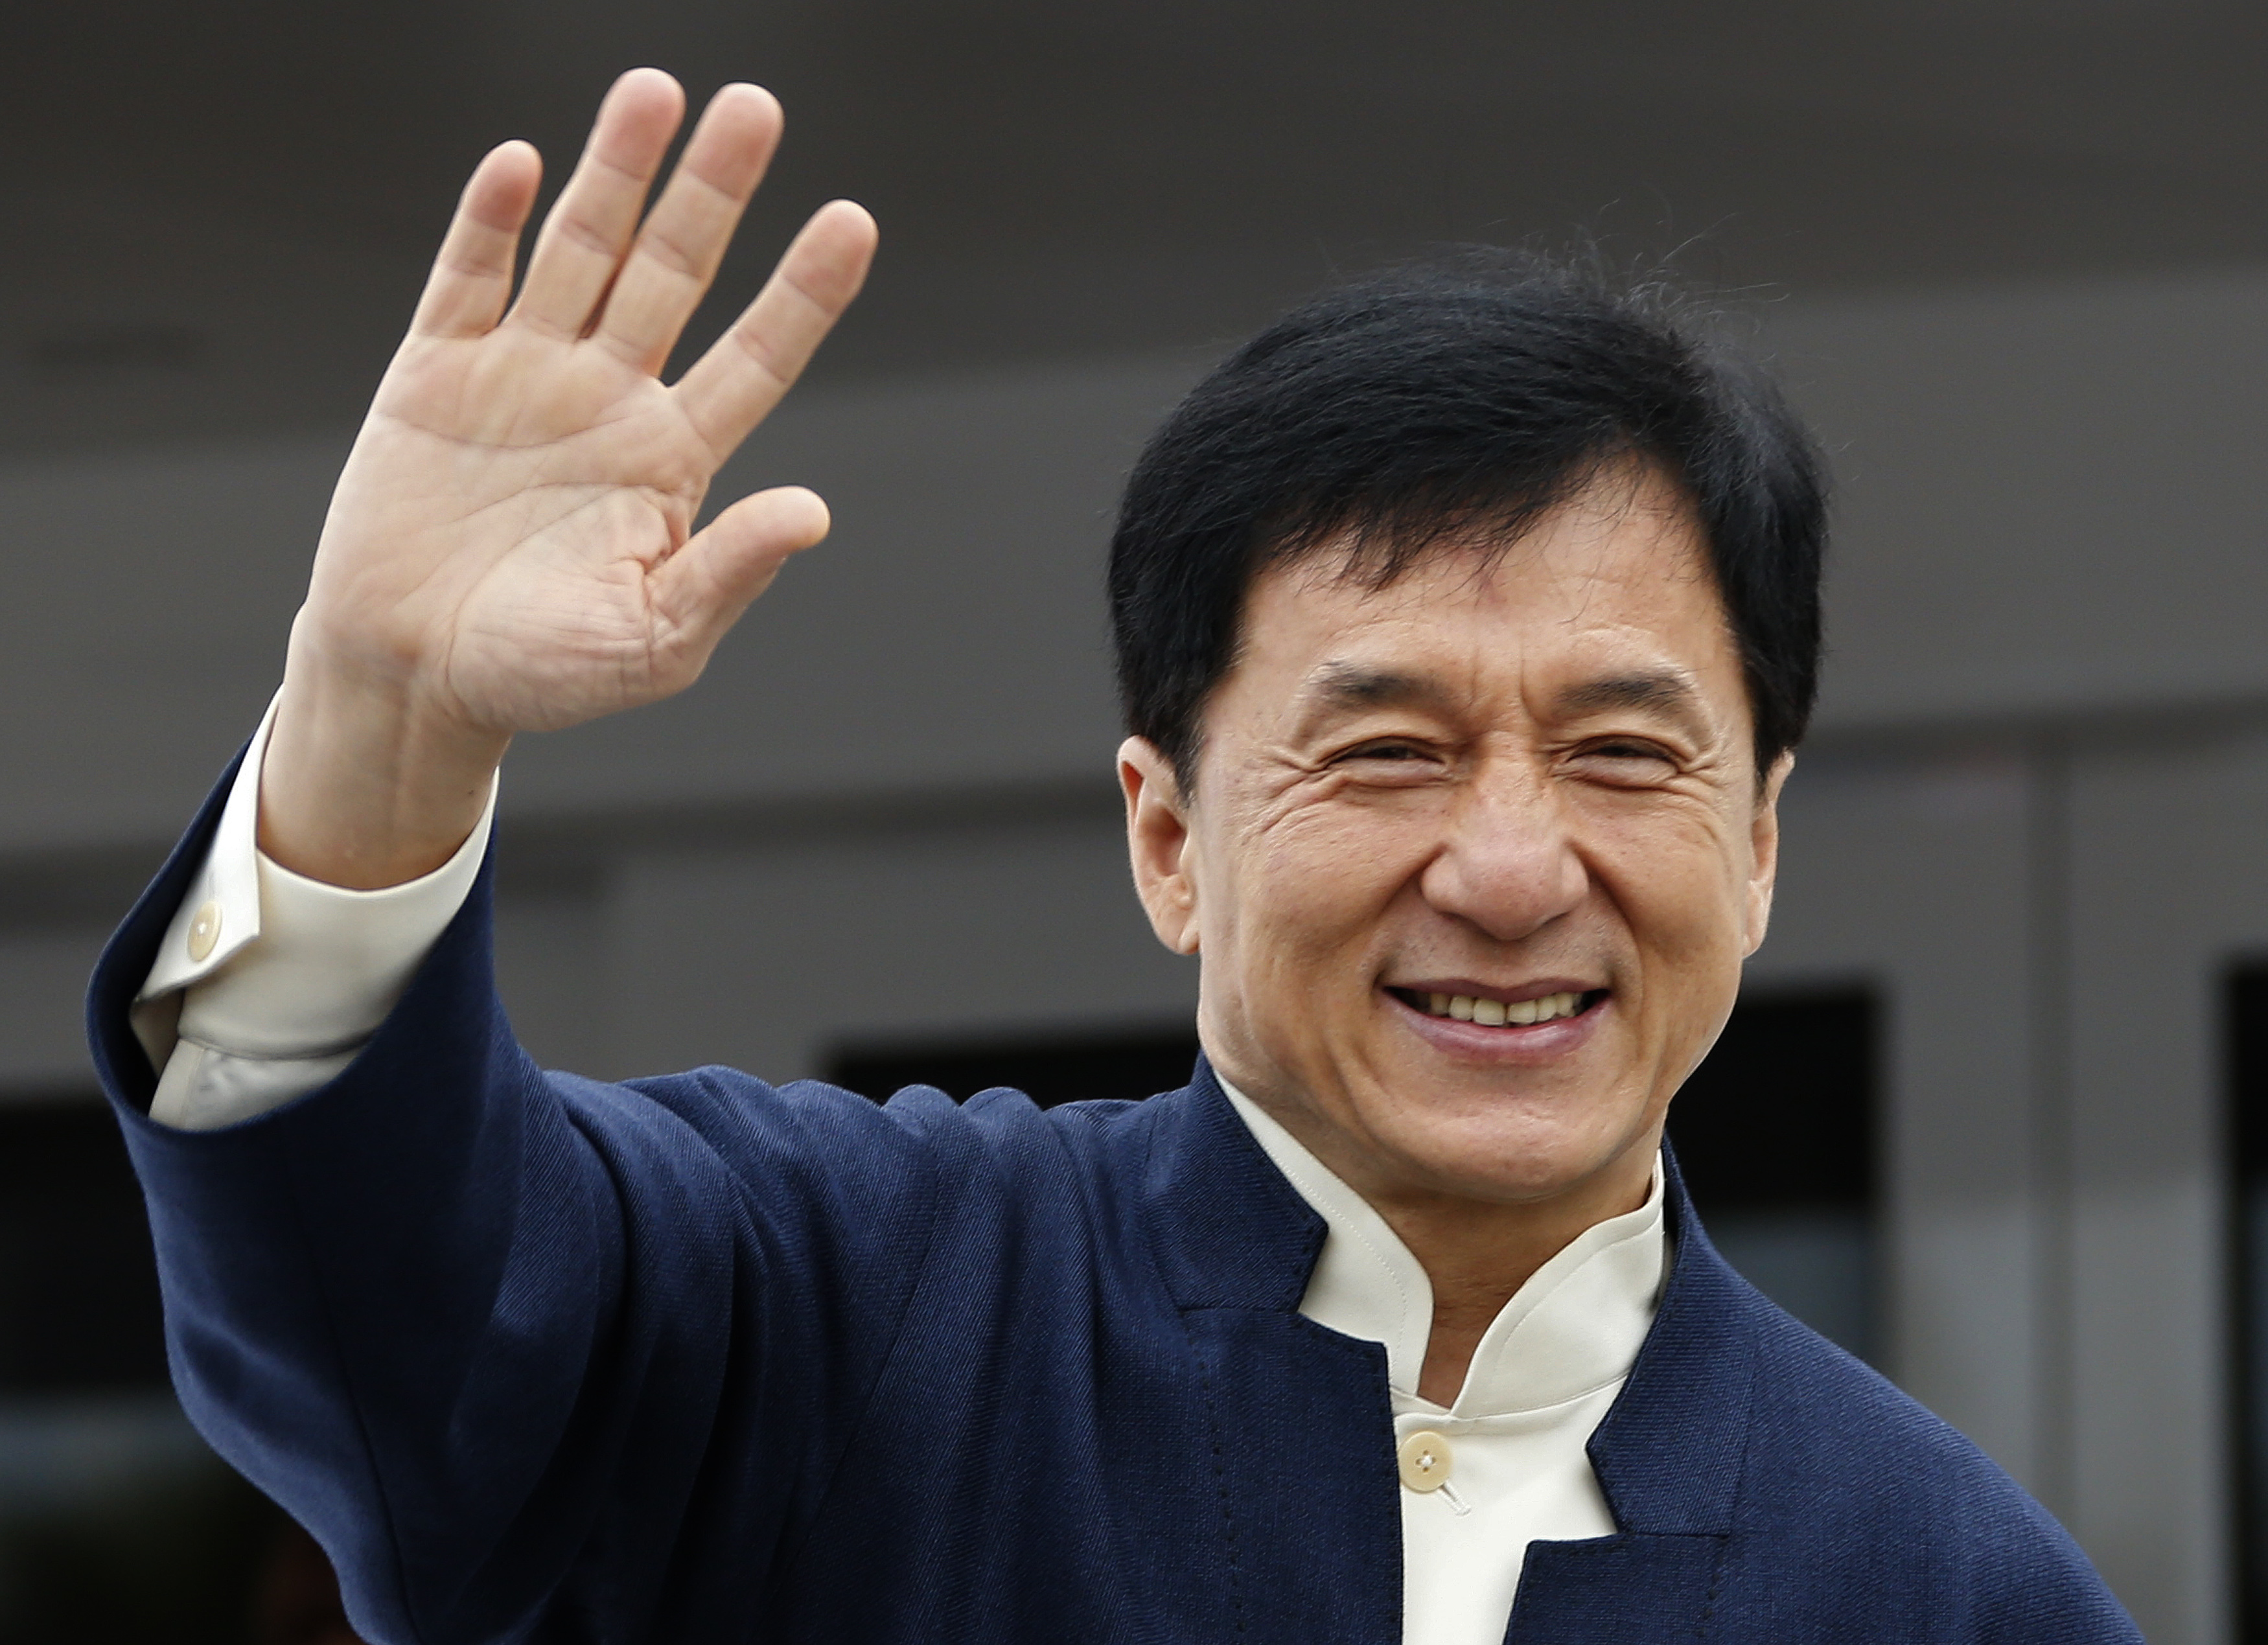 Jackie Chan útskýrir afhverju hann gerir BÍÓMYNDIR! - Það er ekki útaf peningunum!